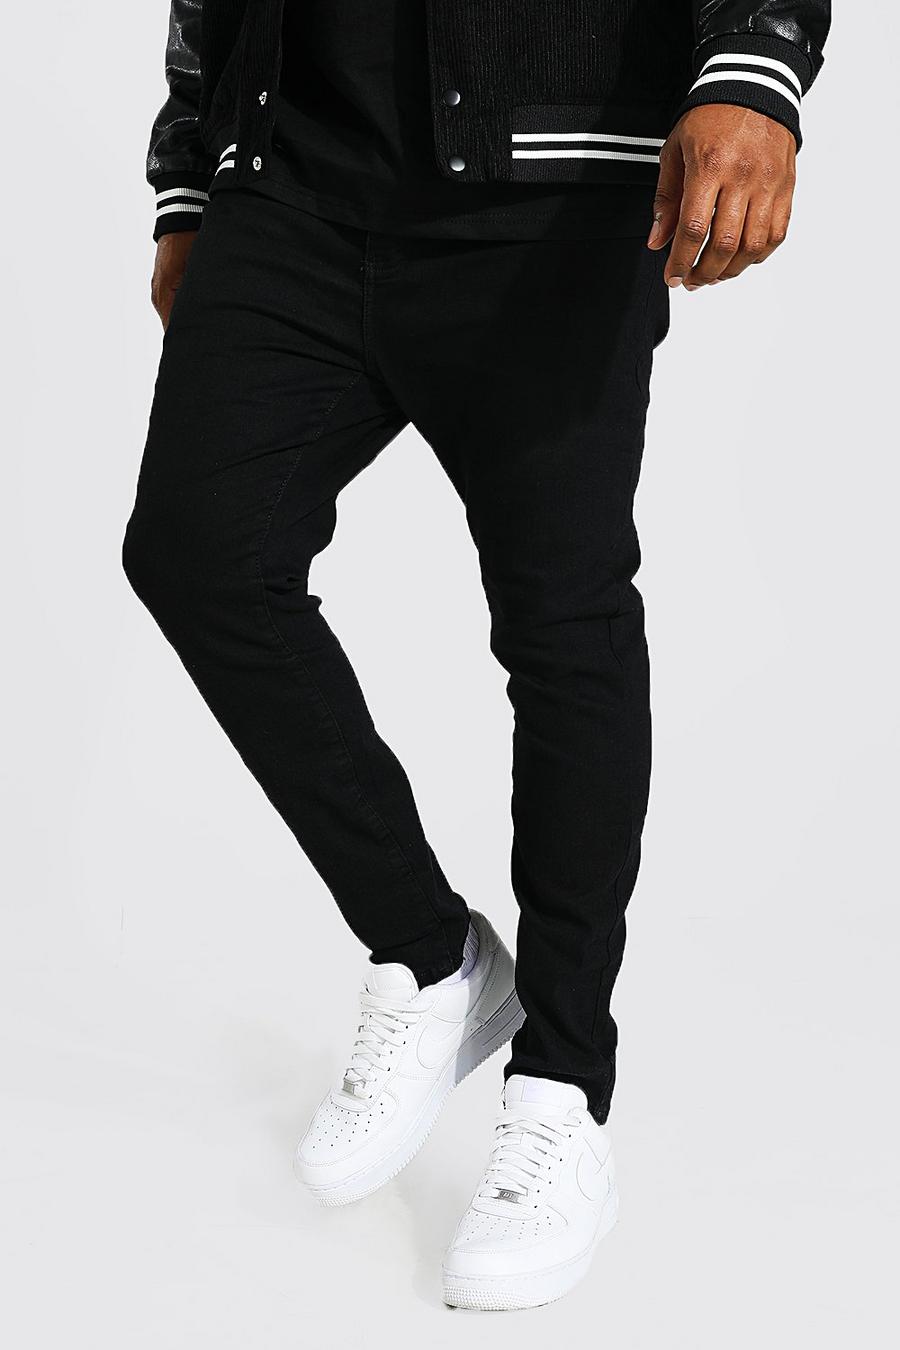 Jeans Plus Size Super Skinny Fit con taglio sul ginocchio, Nero black